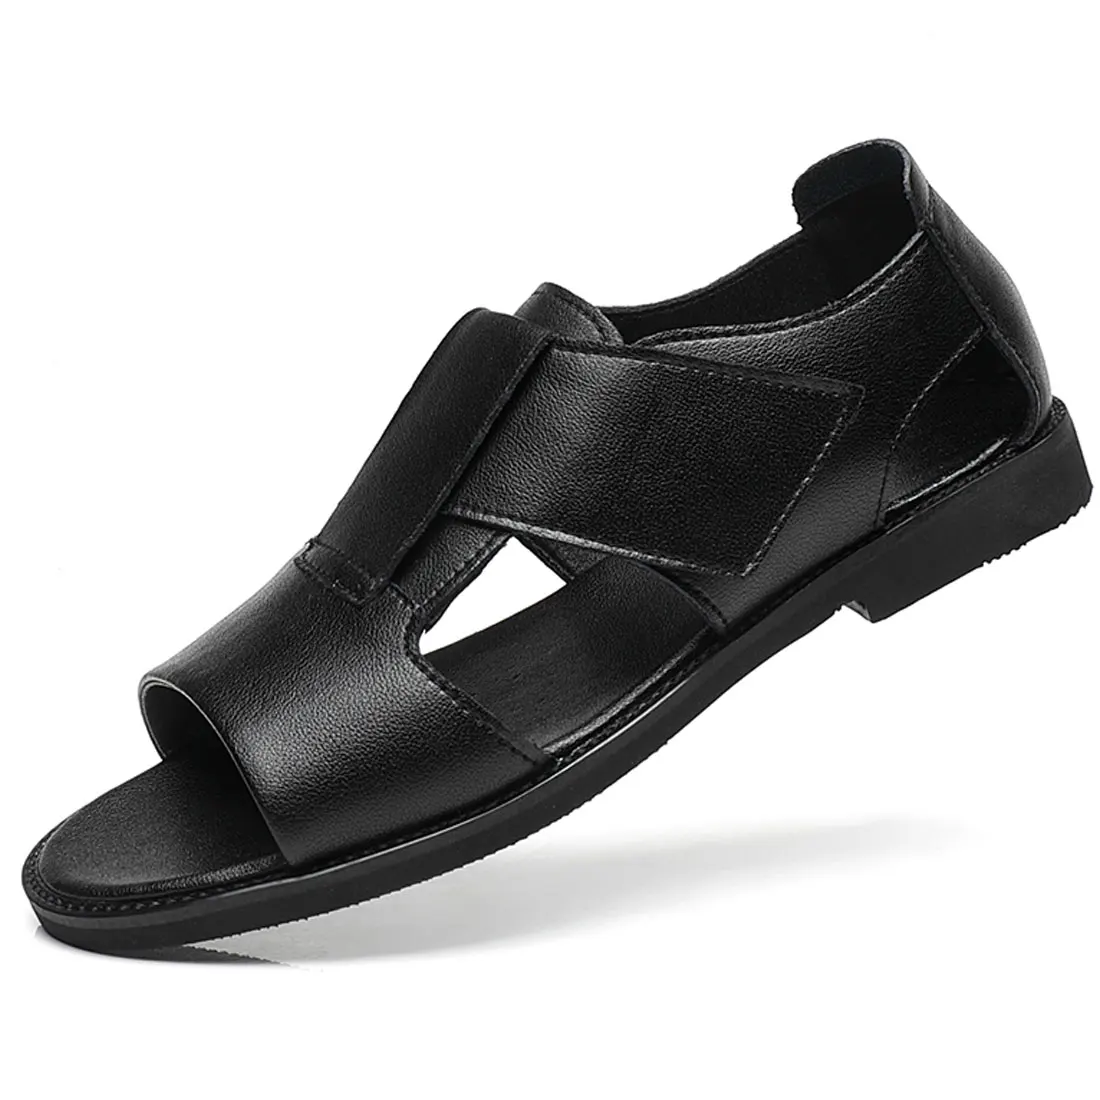 Nowy projekt Męskie Rzymskie sandały Skórzane Modne sandały Czarne męskie letnie buty Wygodne sandały Gladiator Dropshipping 38-47